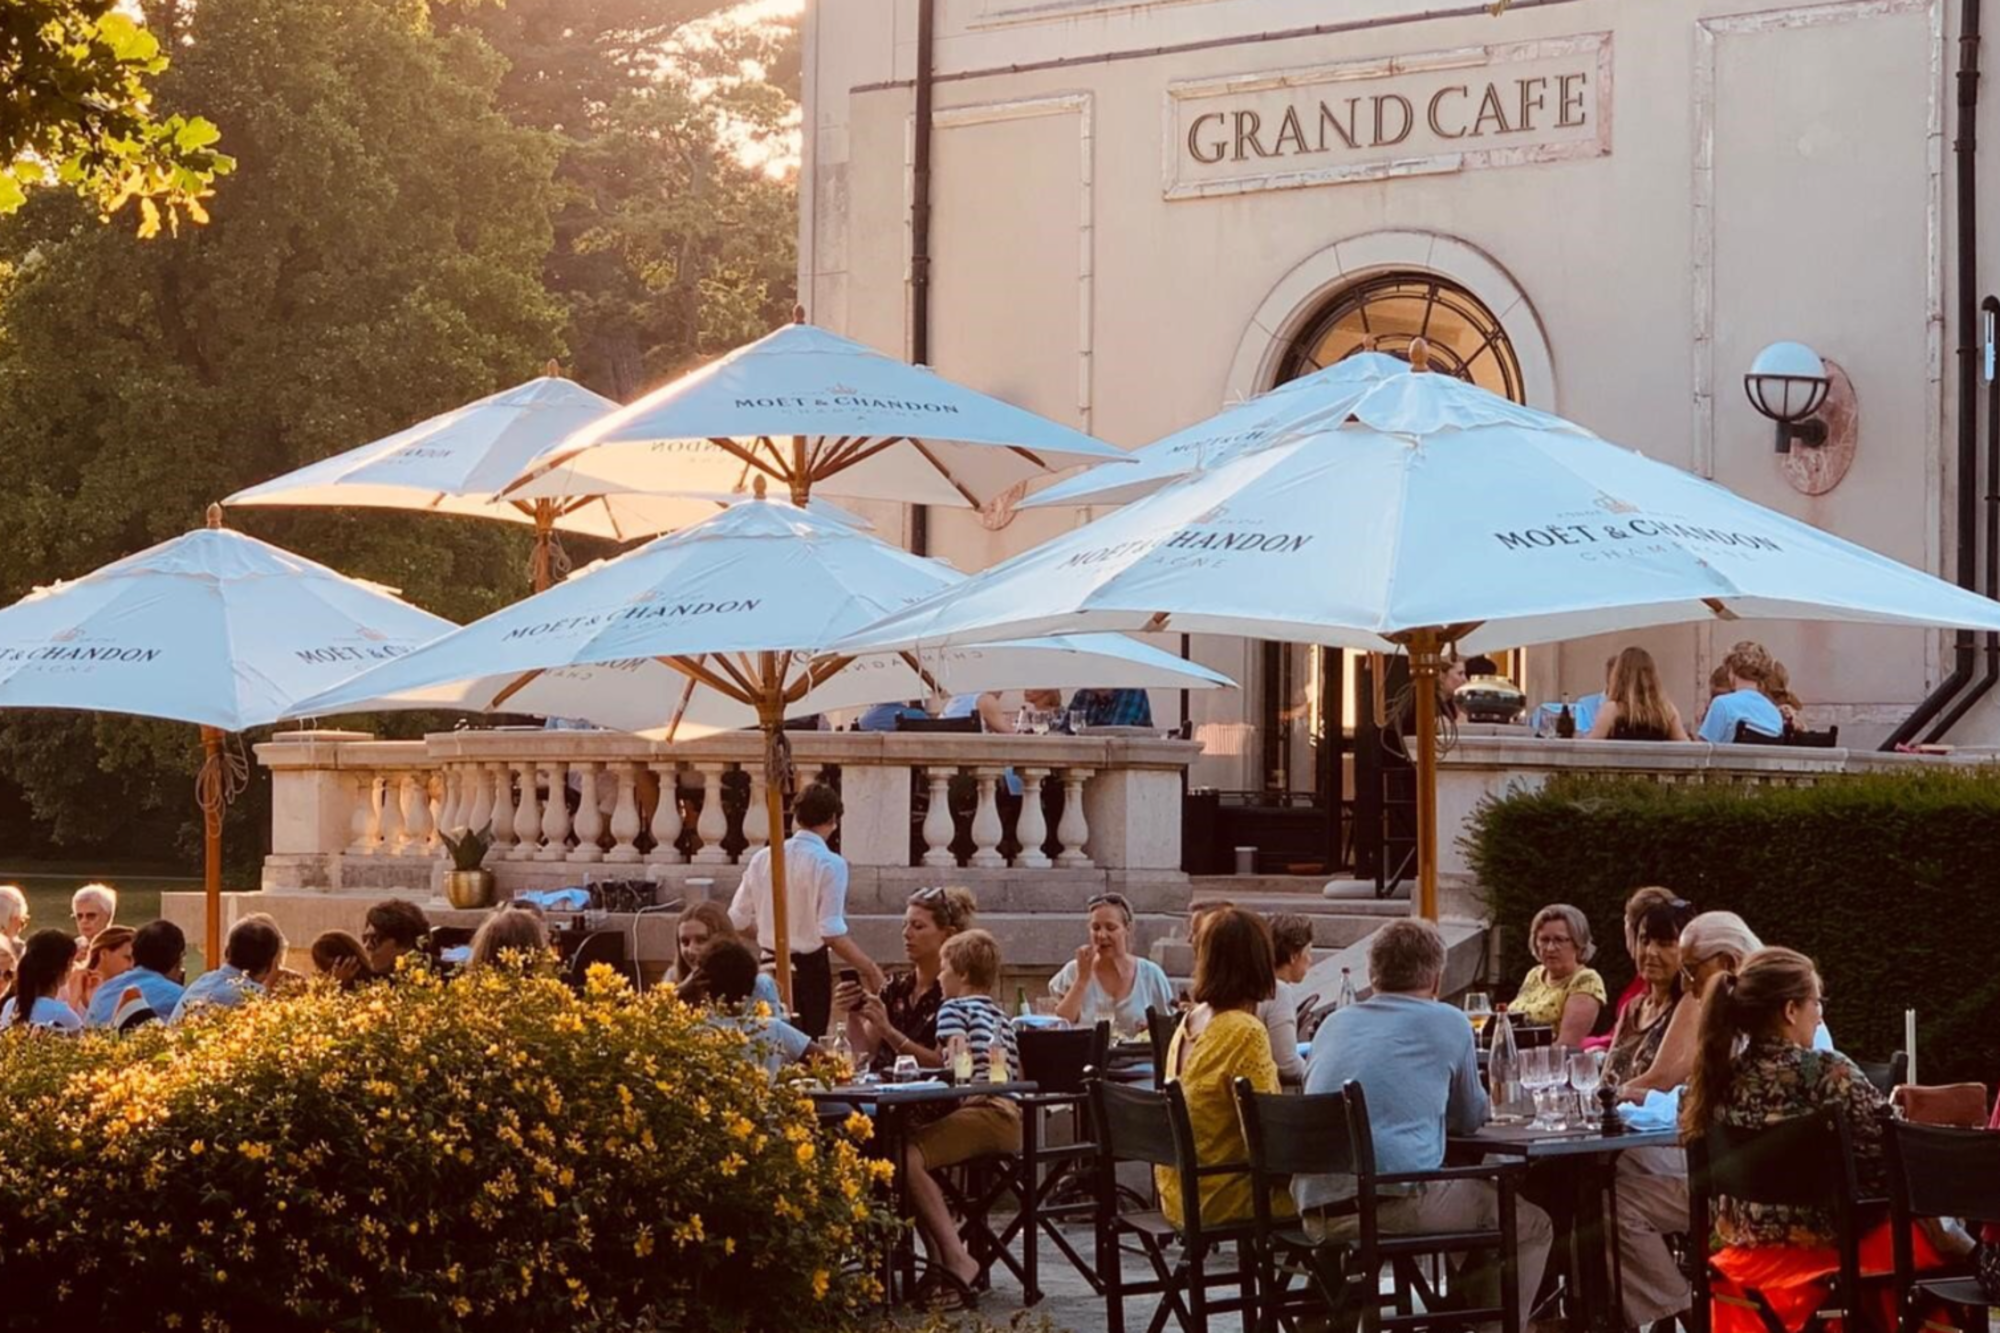 Grand Café den Brandt